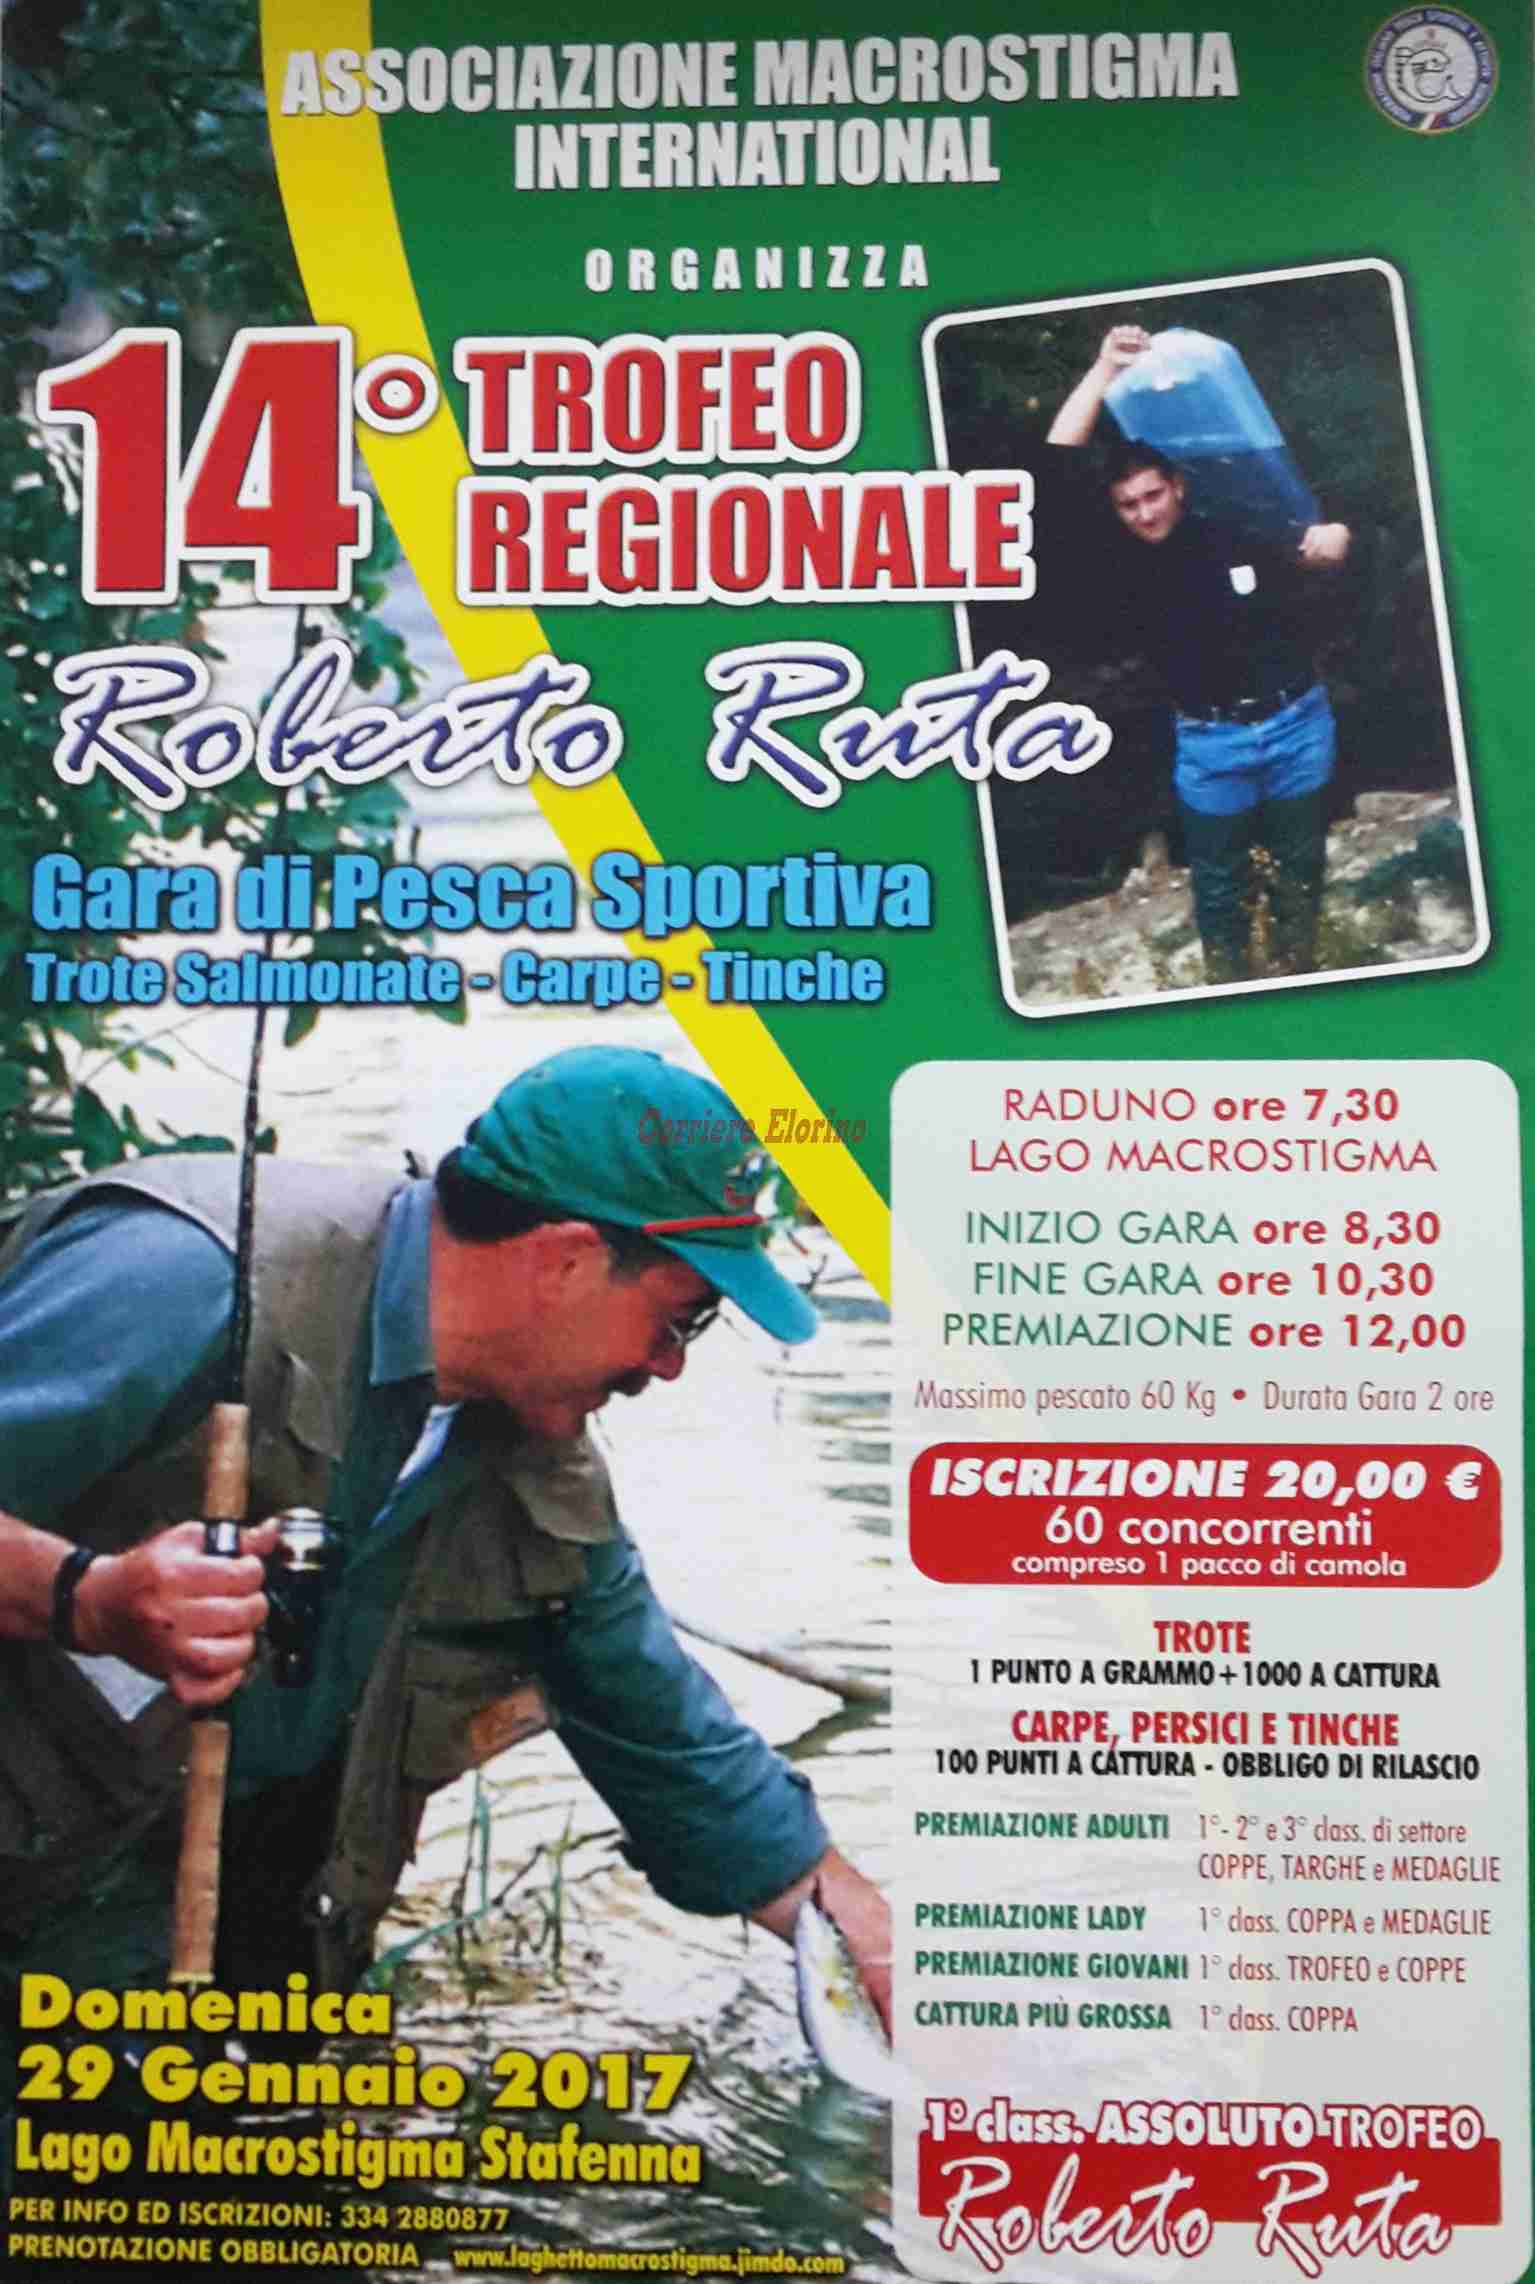 Domenica 29 gennaio il 14° “Trofeo Regionale Roberto Ruta”